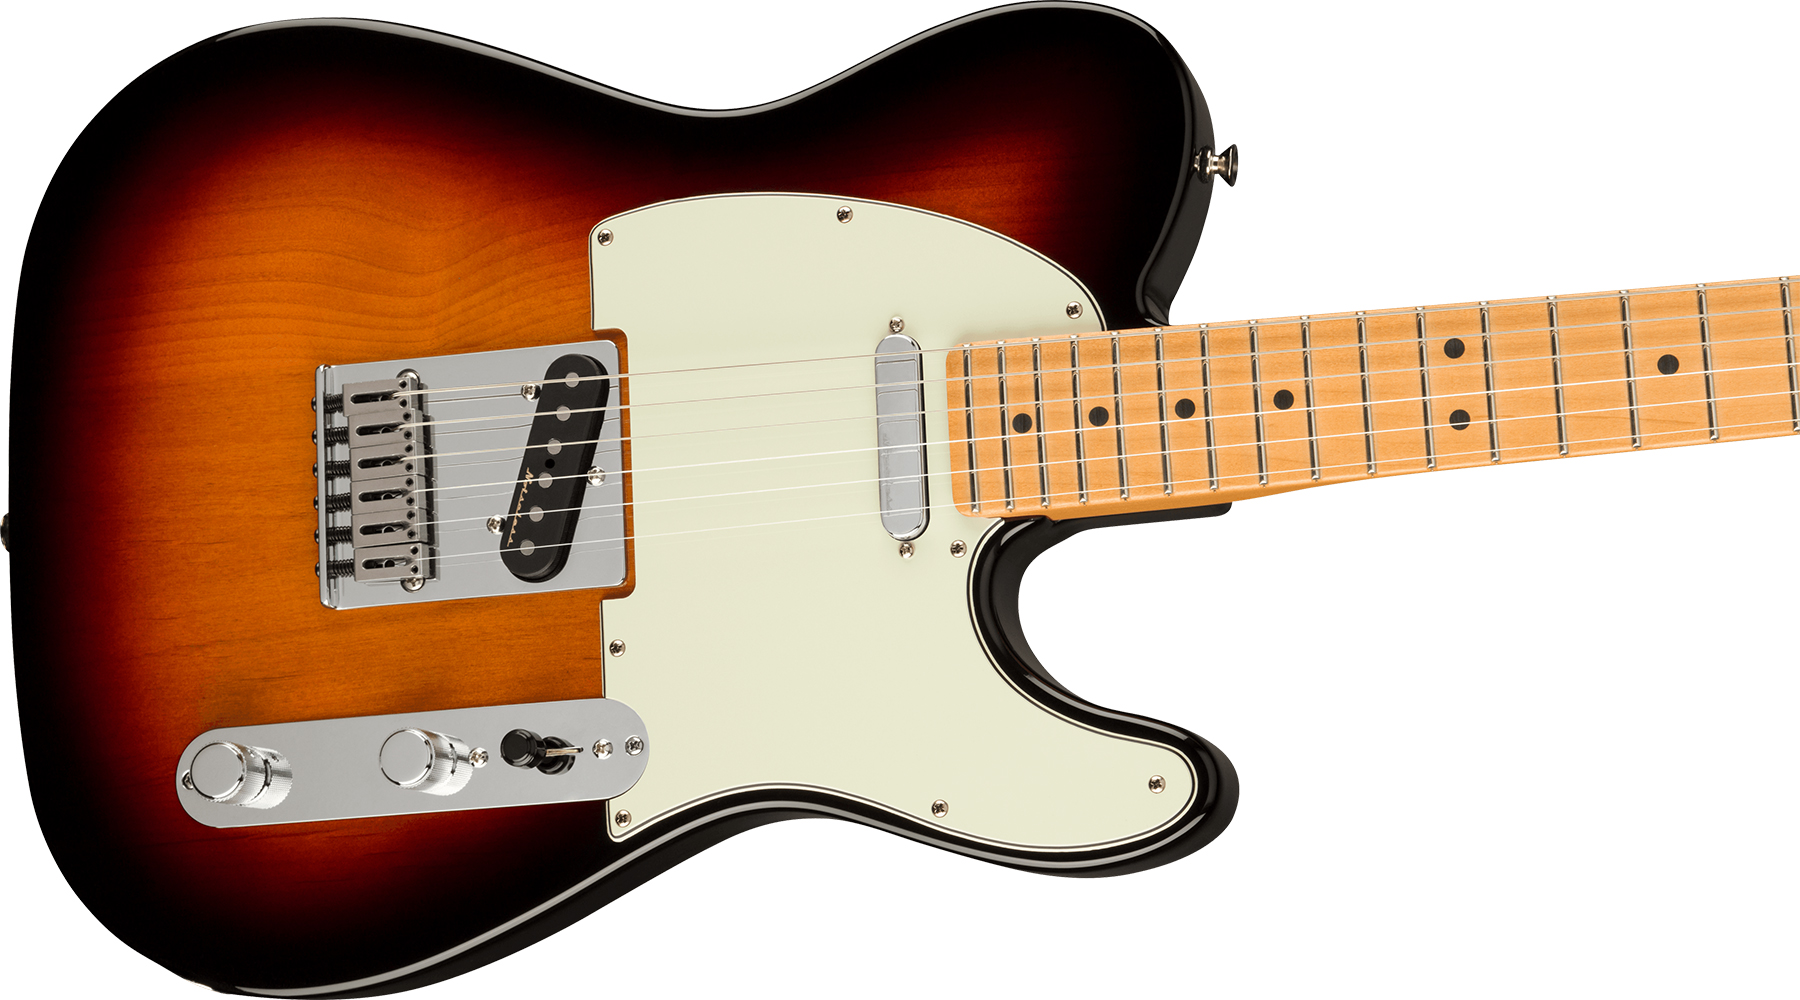 Fender Tele Player Plus Mex 2s Ht Mn - 3-color Sunburst - Tel shape electric guitar - Variation 2